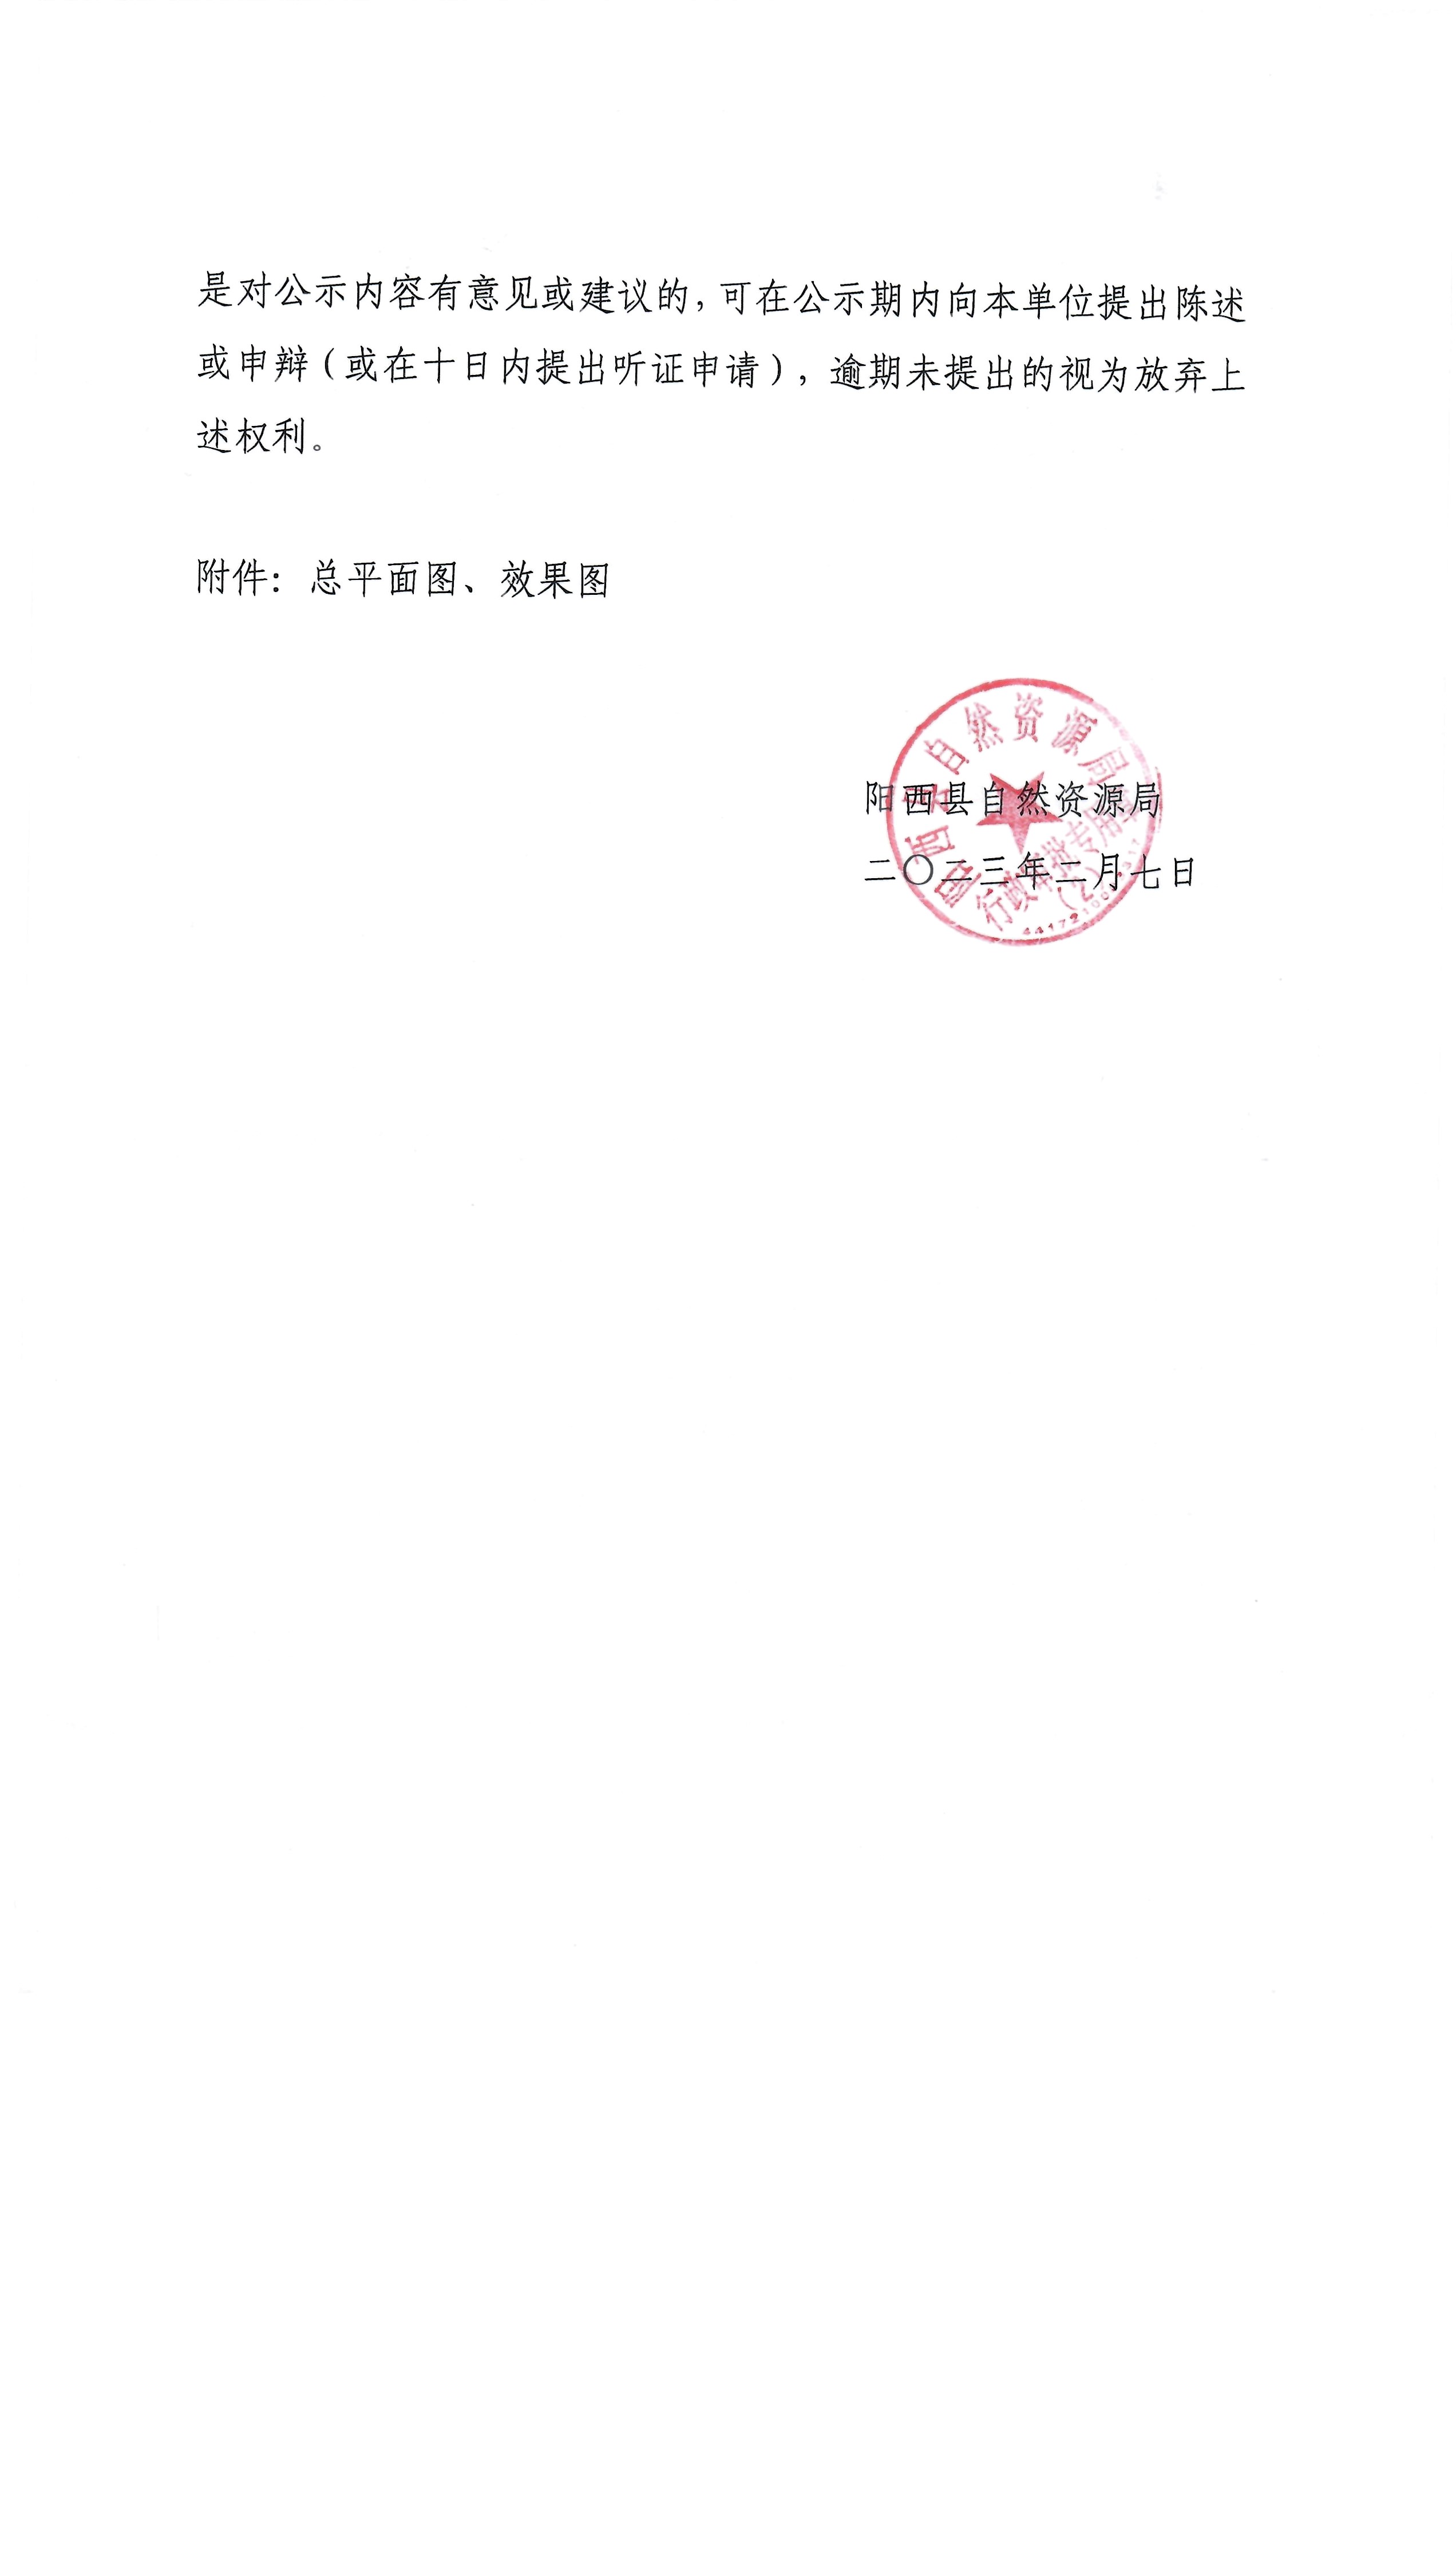 关于阳西县新墟产业园污水处理厂及配套管网建设工程项目建设工程设计方案总平面图的批前公示2.jpg